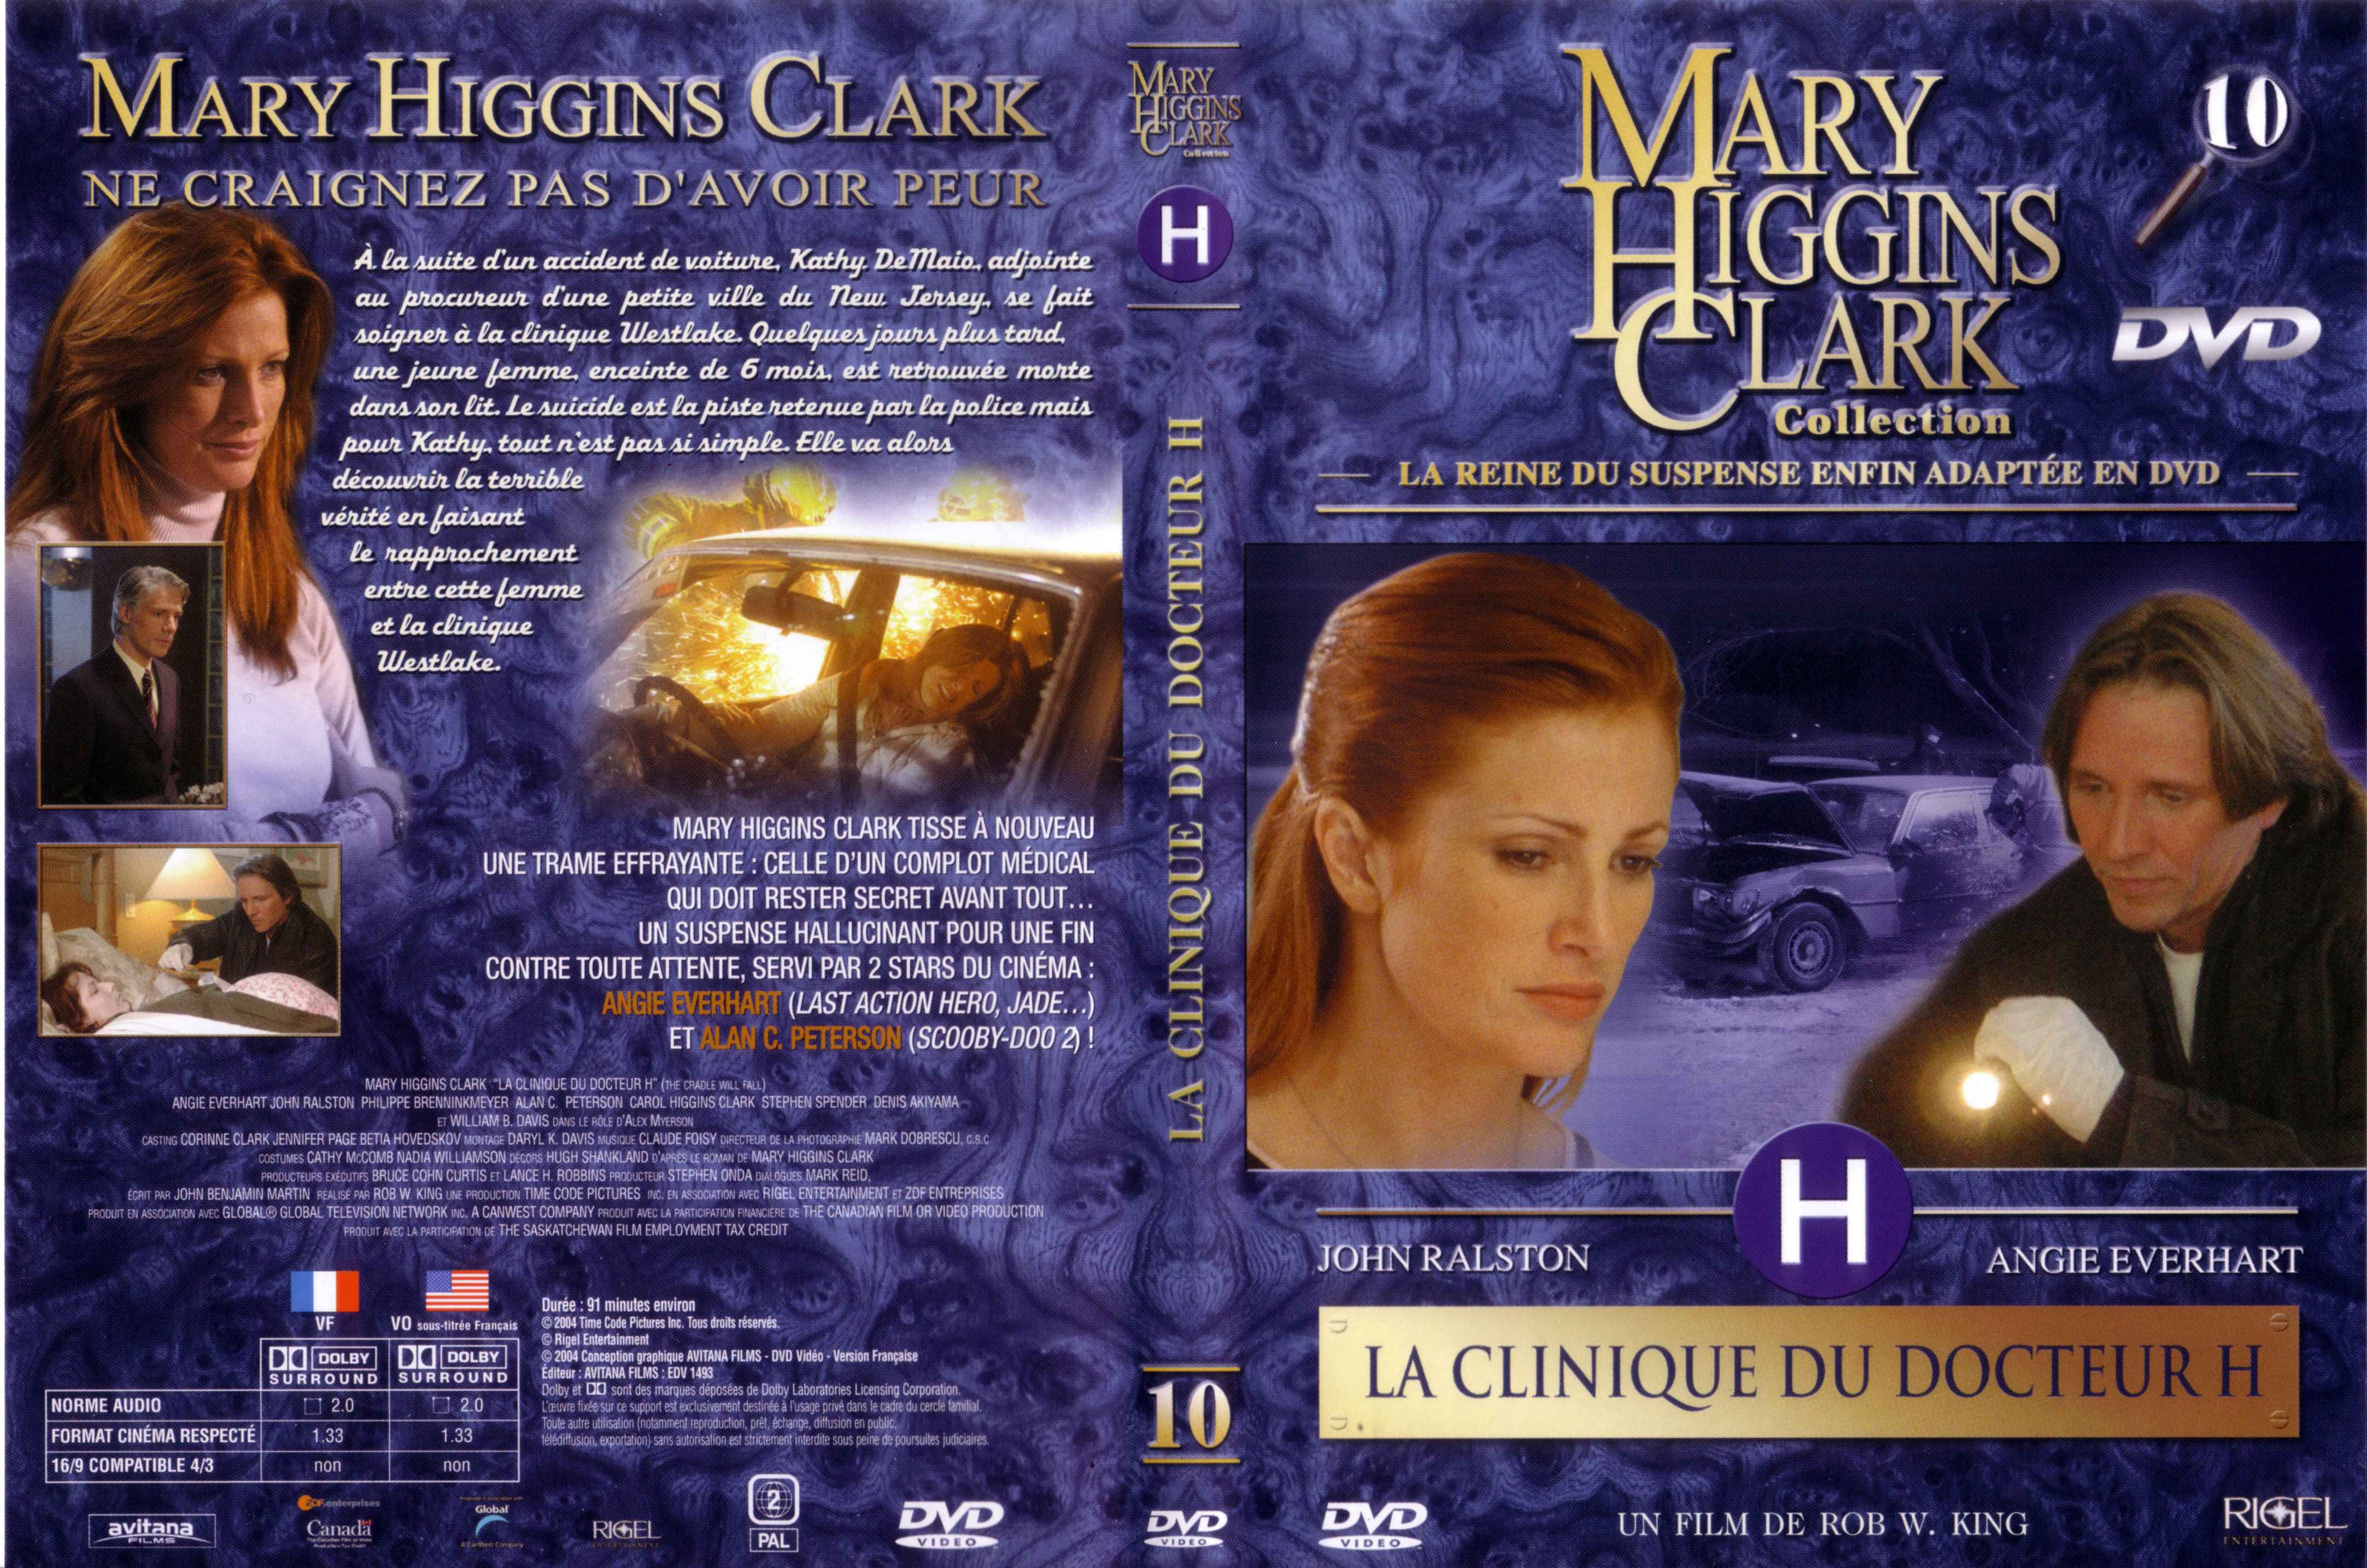 Jaquette DVD Mary Higgins Clark vol 10 - La clinique du docteur H